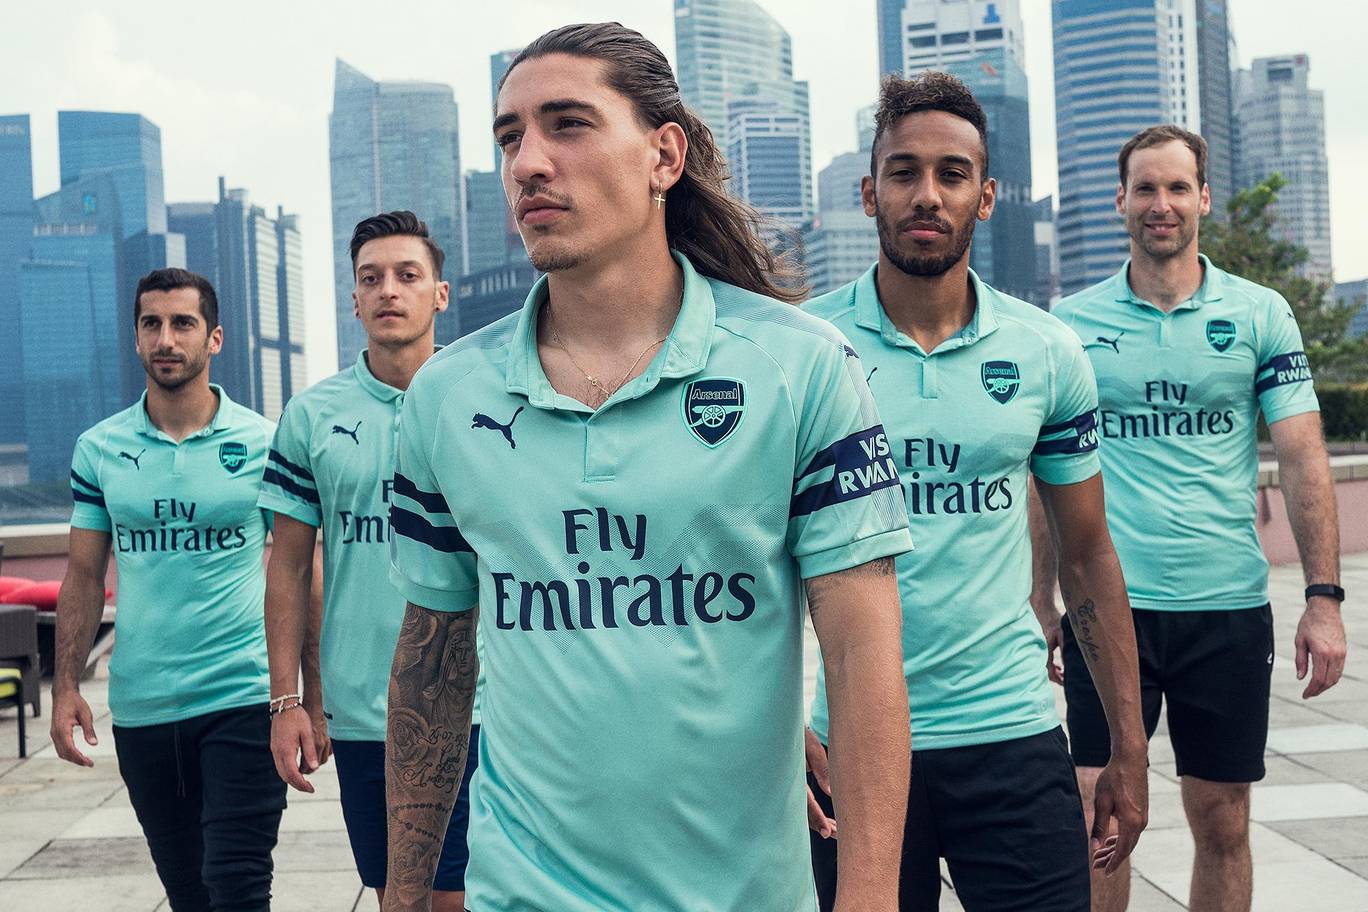 Arsenal unveil third kit for the 2018-19 season